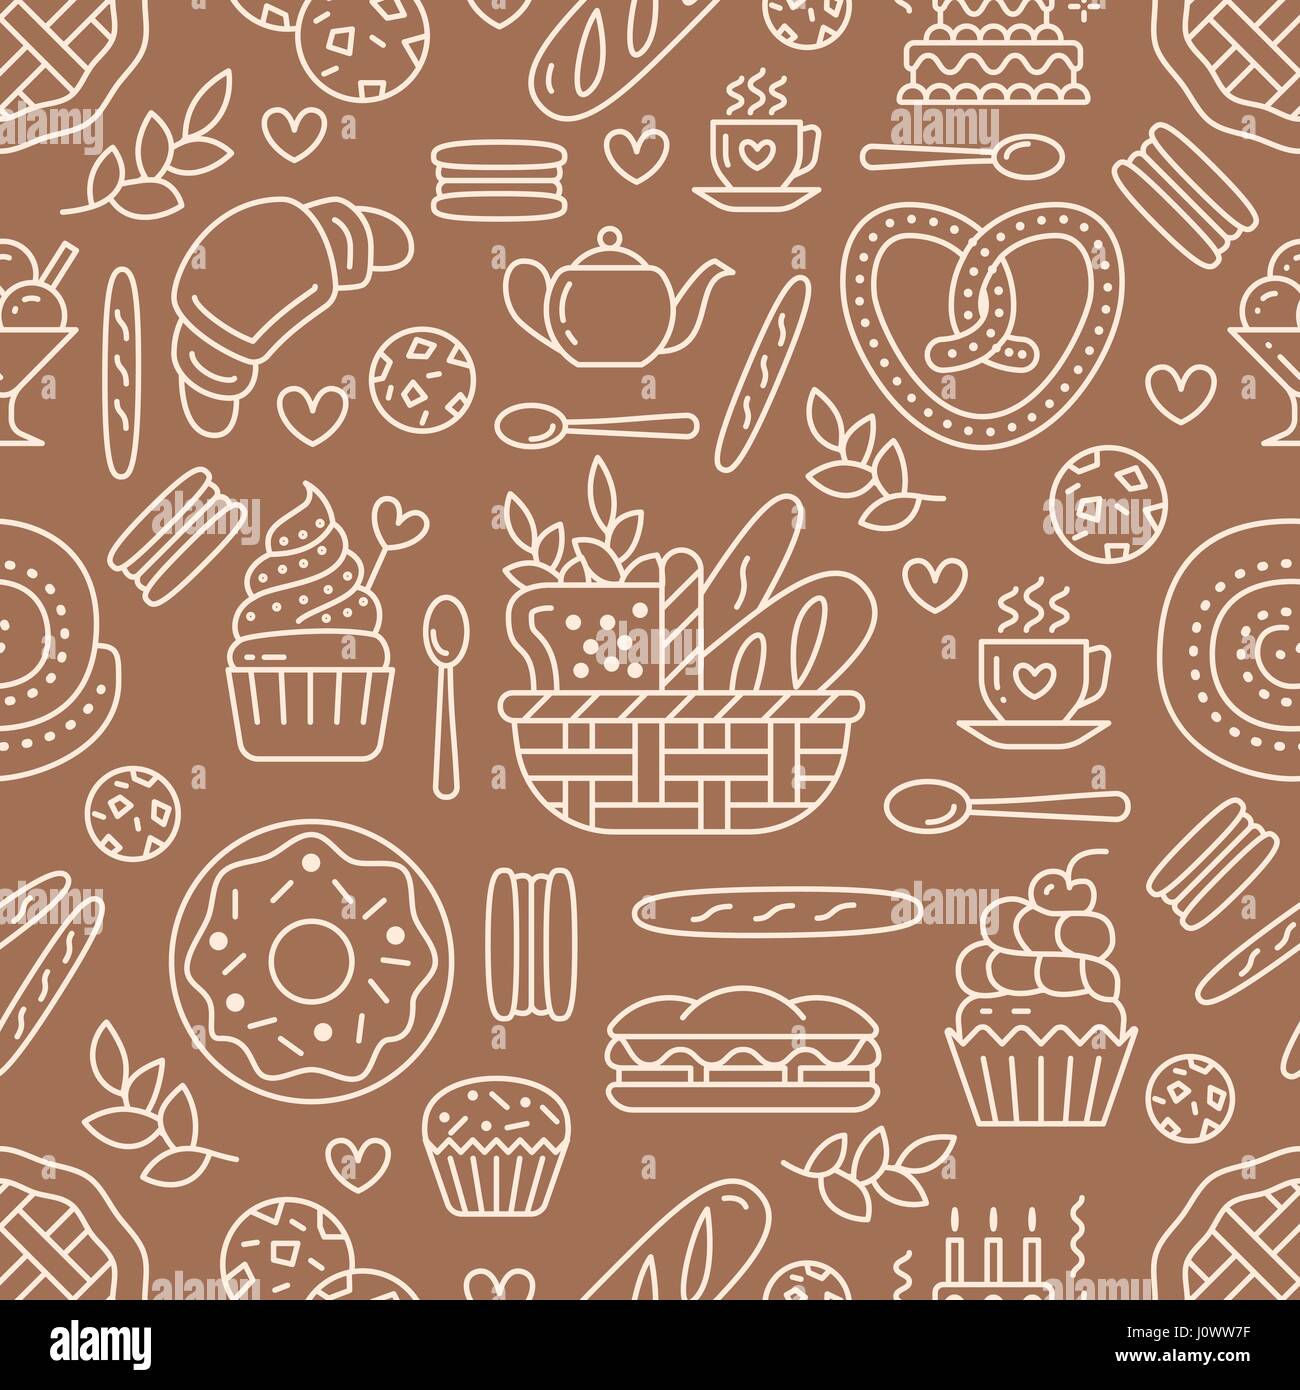 Panificio seamless pattern, cibo sfondo vettoriale di marrone, colore bianco. Prodotti dolciari sottile linea icone - torta, croissant, muffin, pasticceria, tortina, torta. Carino illustrazione ripetuta per il negozio di dolci Illustrazione Vettoriale